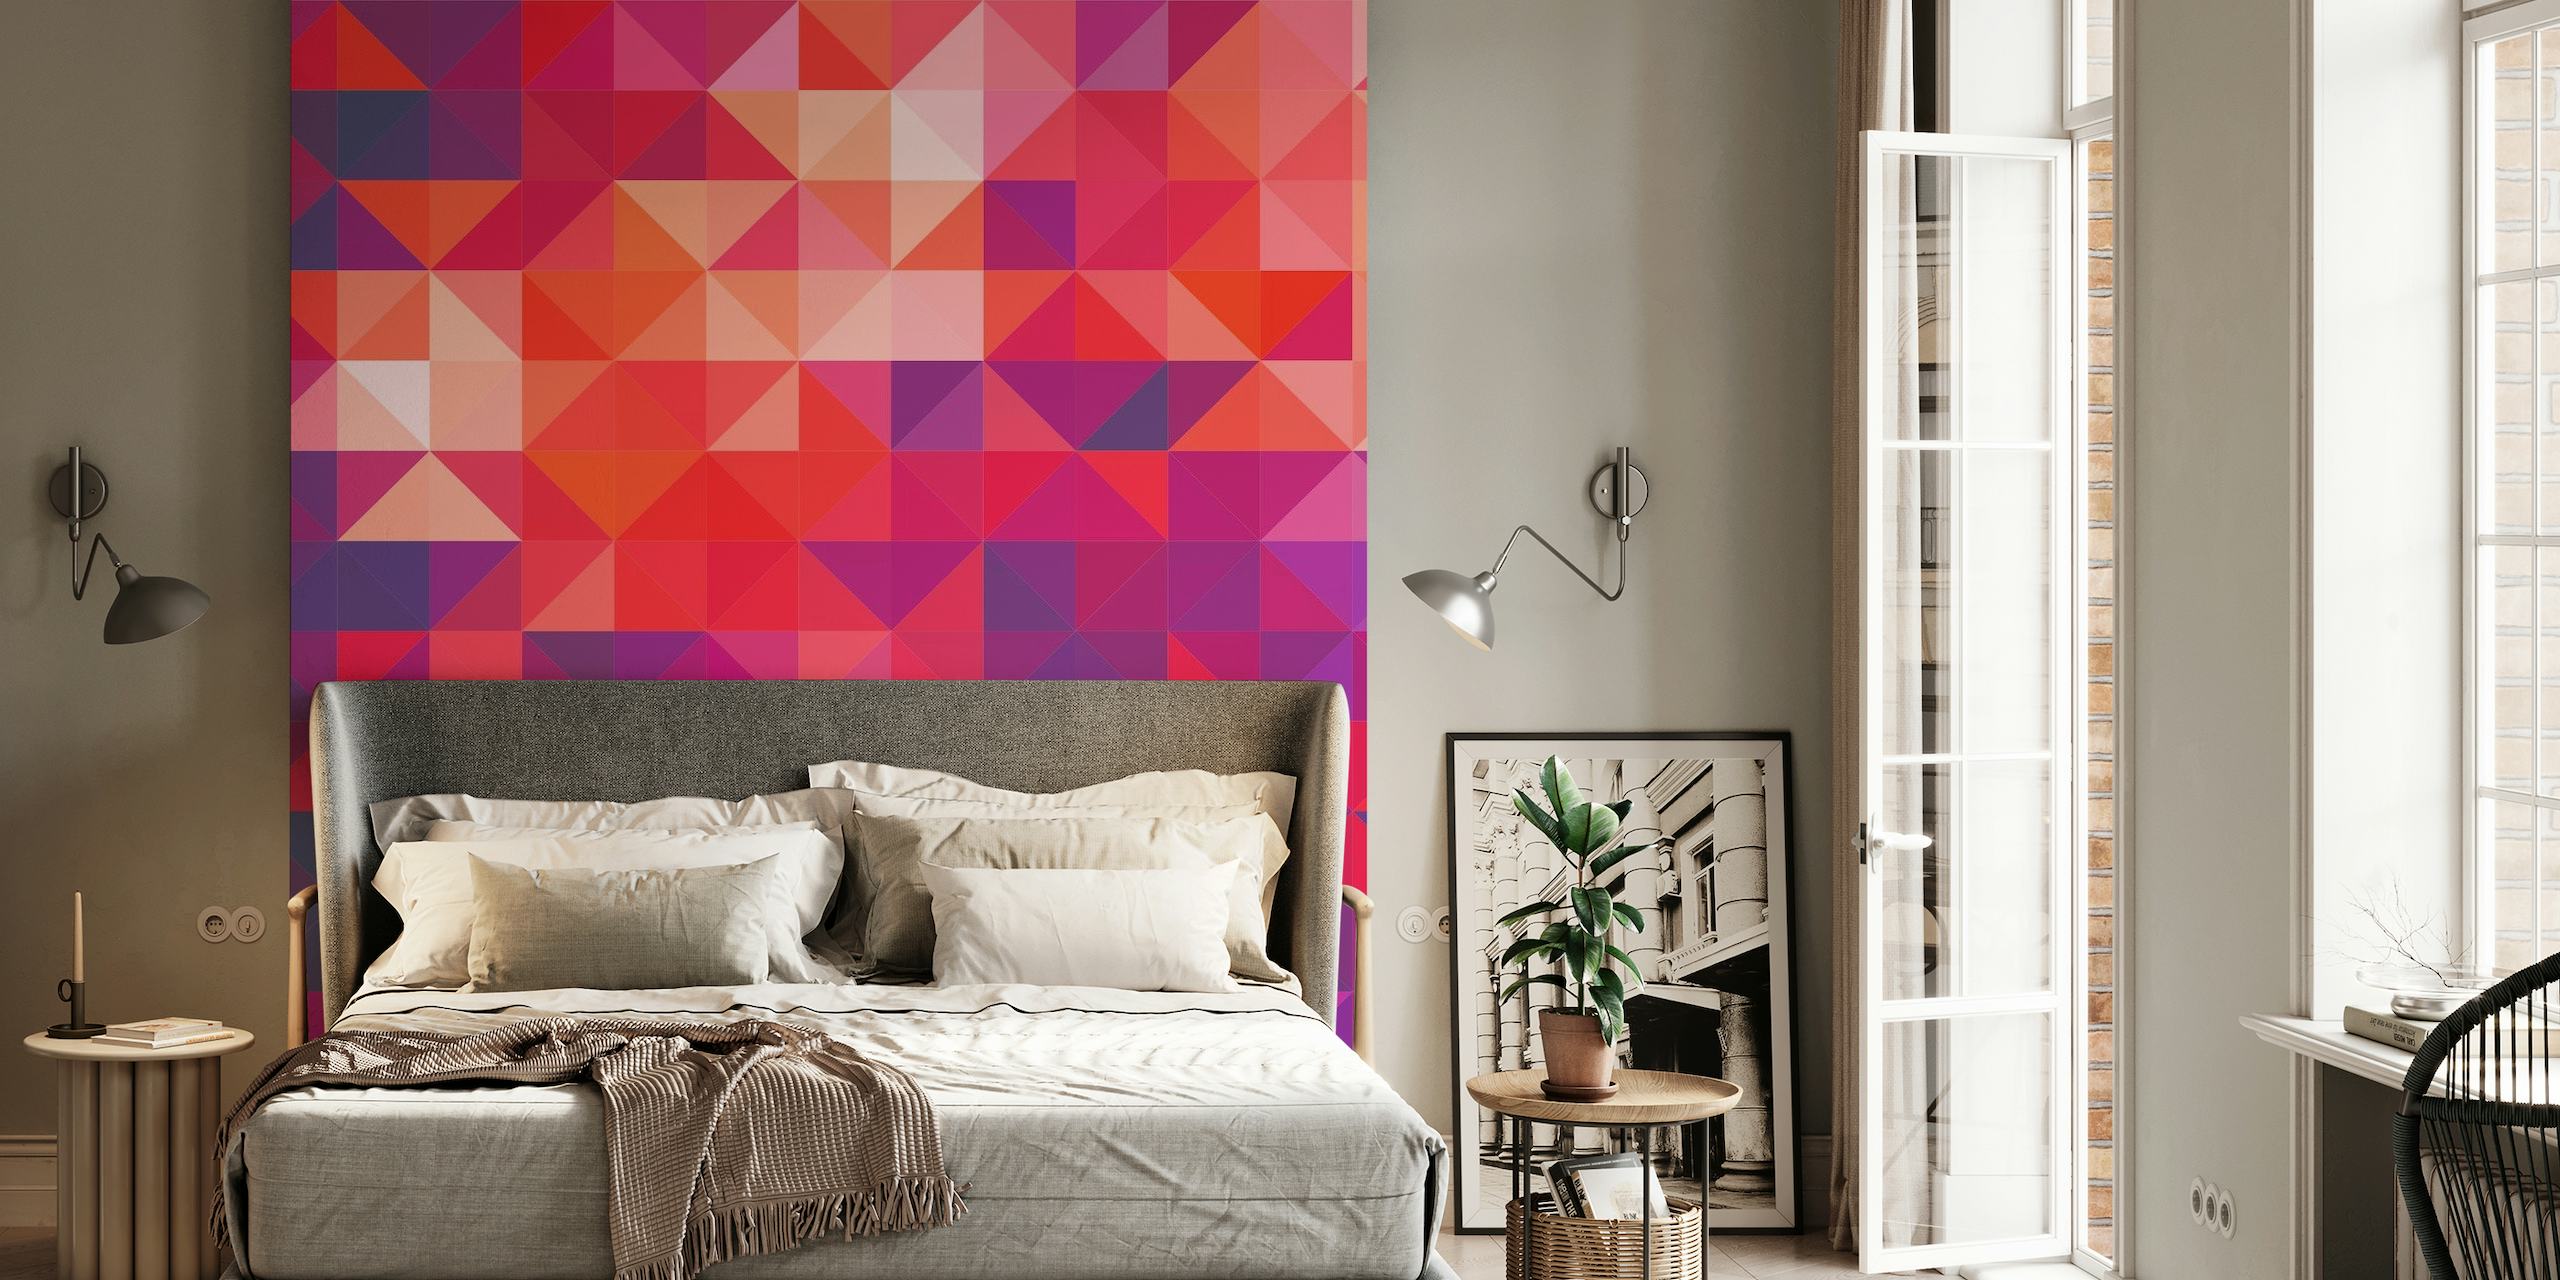 Geometrinen kuviollinen seinämaalaus, jossa on punaisia, violetteja ja vaaleanpunaisia kolmioita